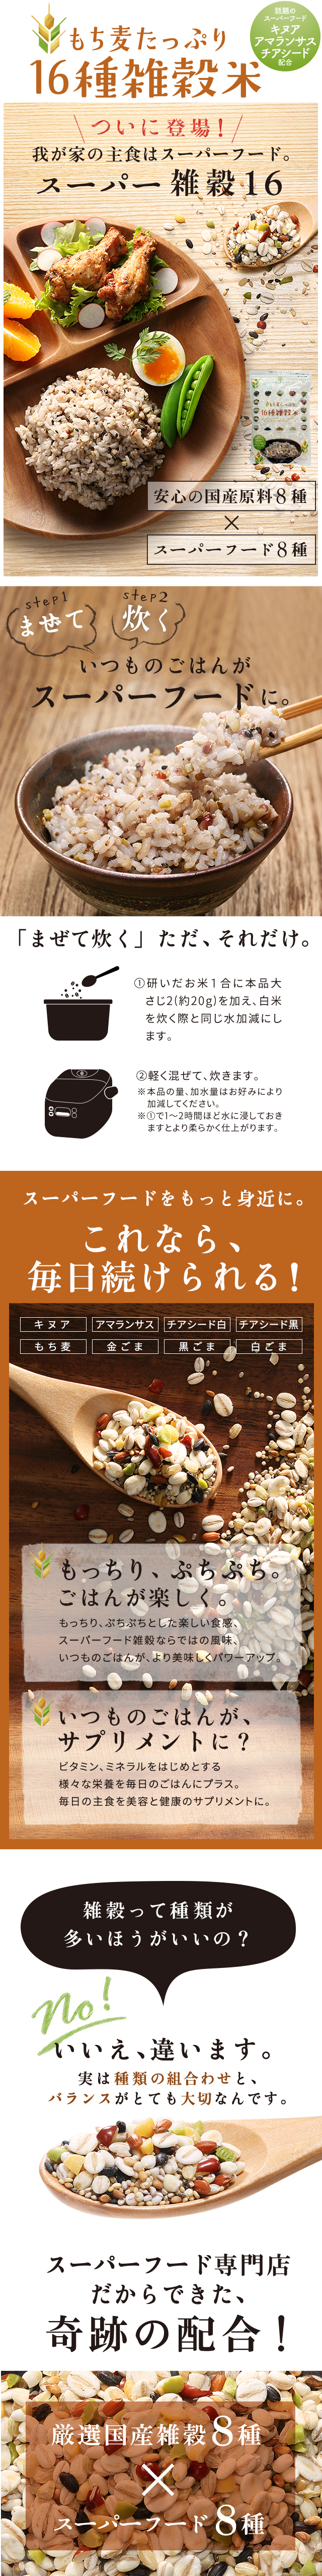 雑穀米 国産 もち麦たっぷり16種雑穀米 500g チアシード キヌア アマランサス SUPER FOODS JAPAN - 通販 -  PayPayモール